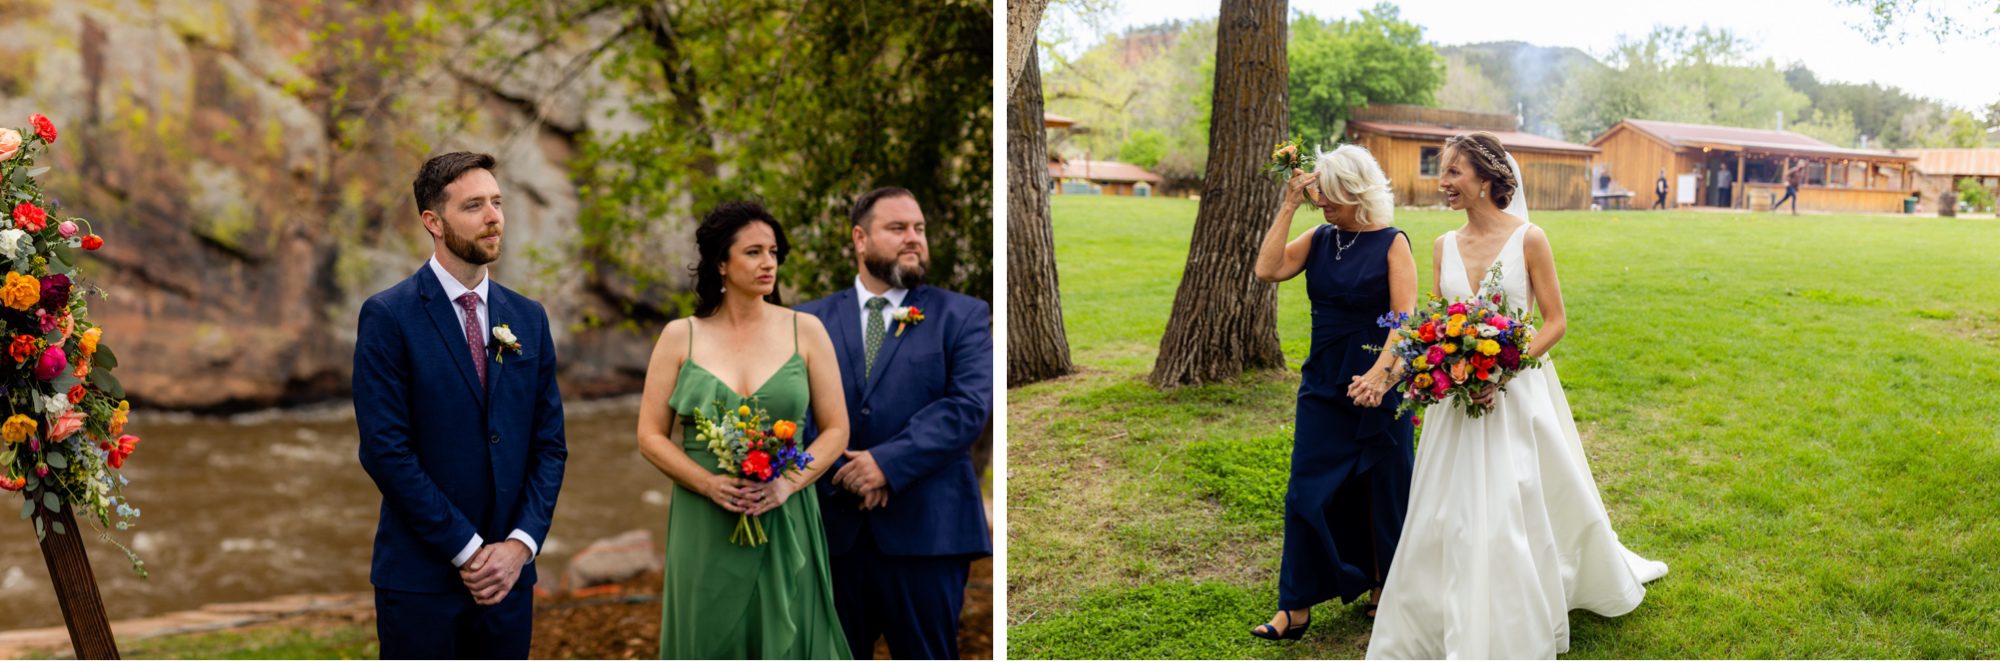 First look, Planet Bluegrass Wedding venue in Lyons Colorado: Colorado Wedding Photographer, Wedding ceremony